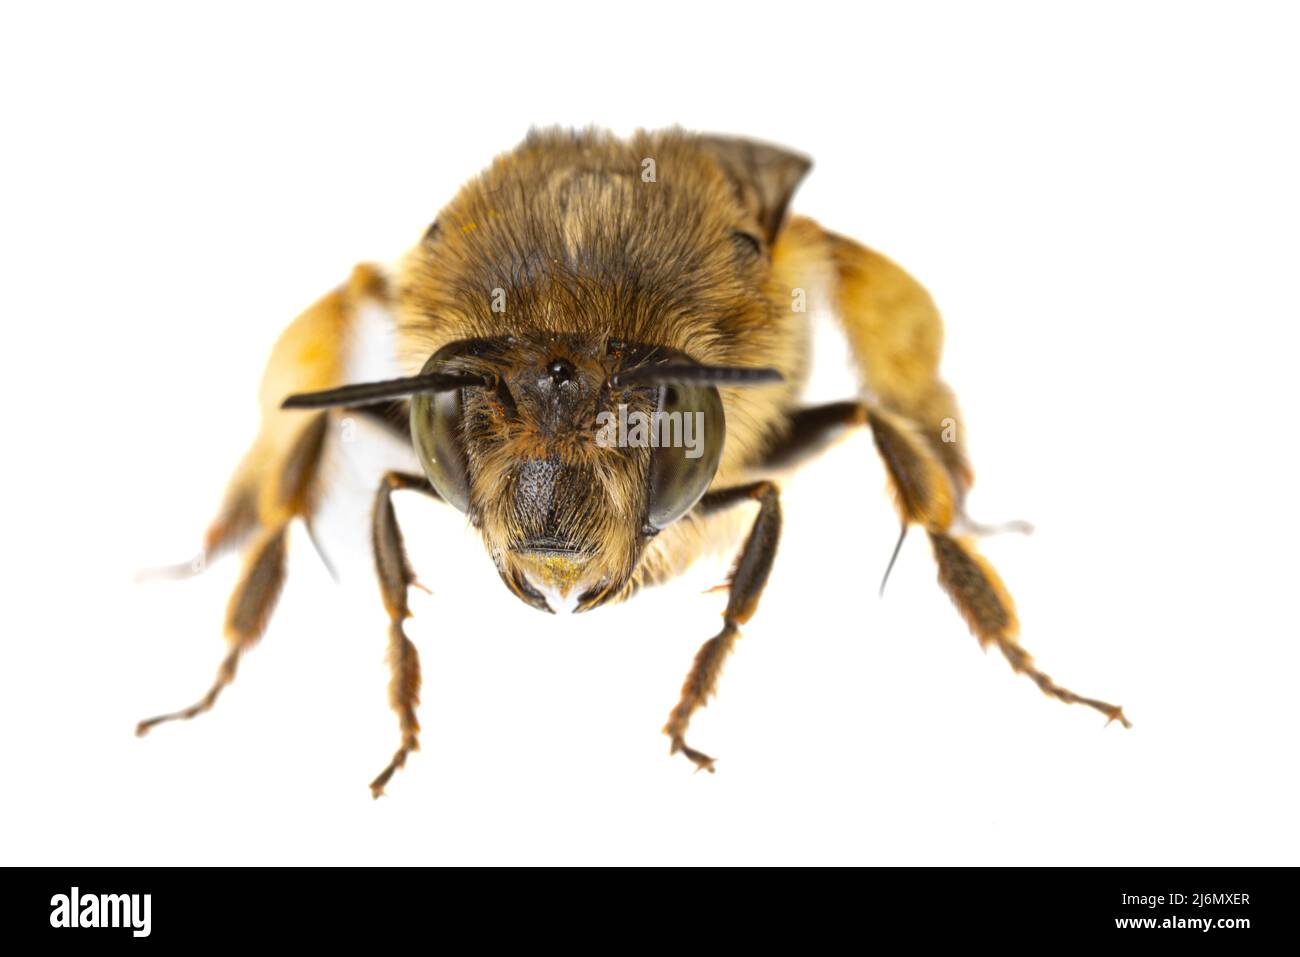 Insekten Europas - Bienen: Makro weiblicher Anthophora crinipes (Pelzbienen) isoliert auf weißem Hintergrund - Kopfdetails Stockfoto